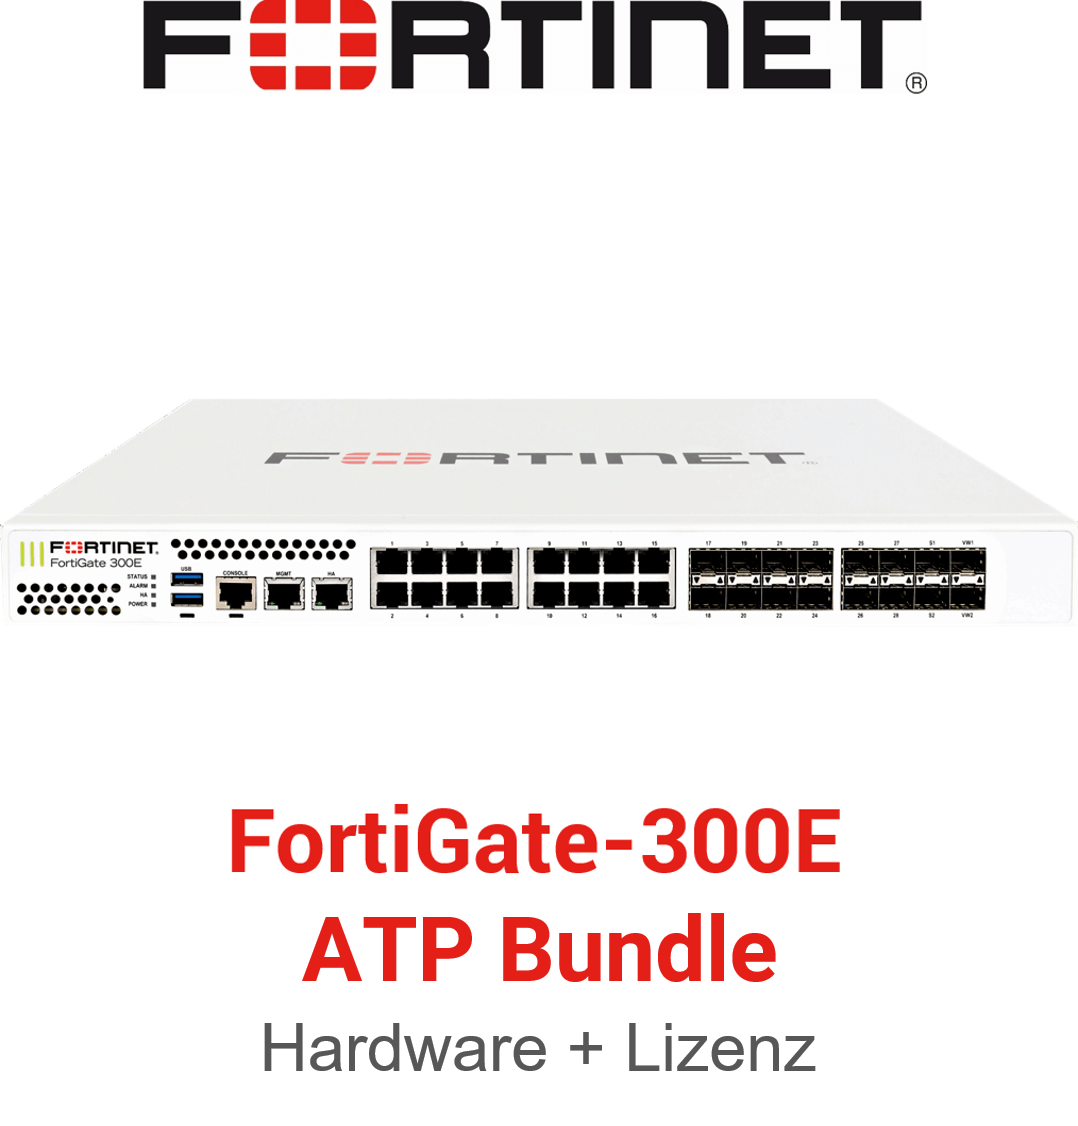 Fortinet FortiGate-300E - ATP Bundle (Hardware + Lizenz)